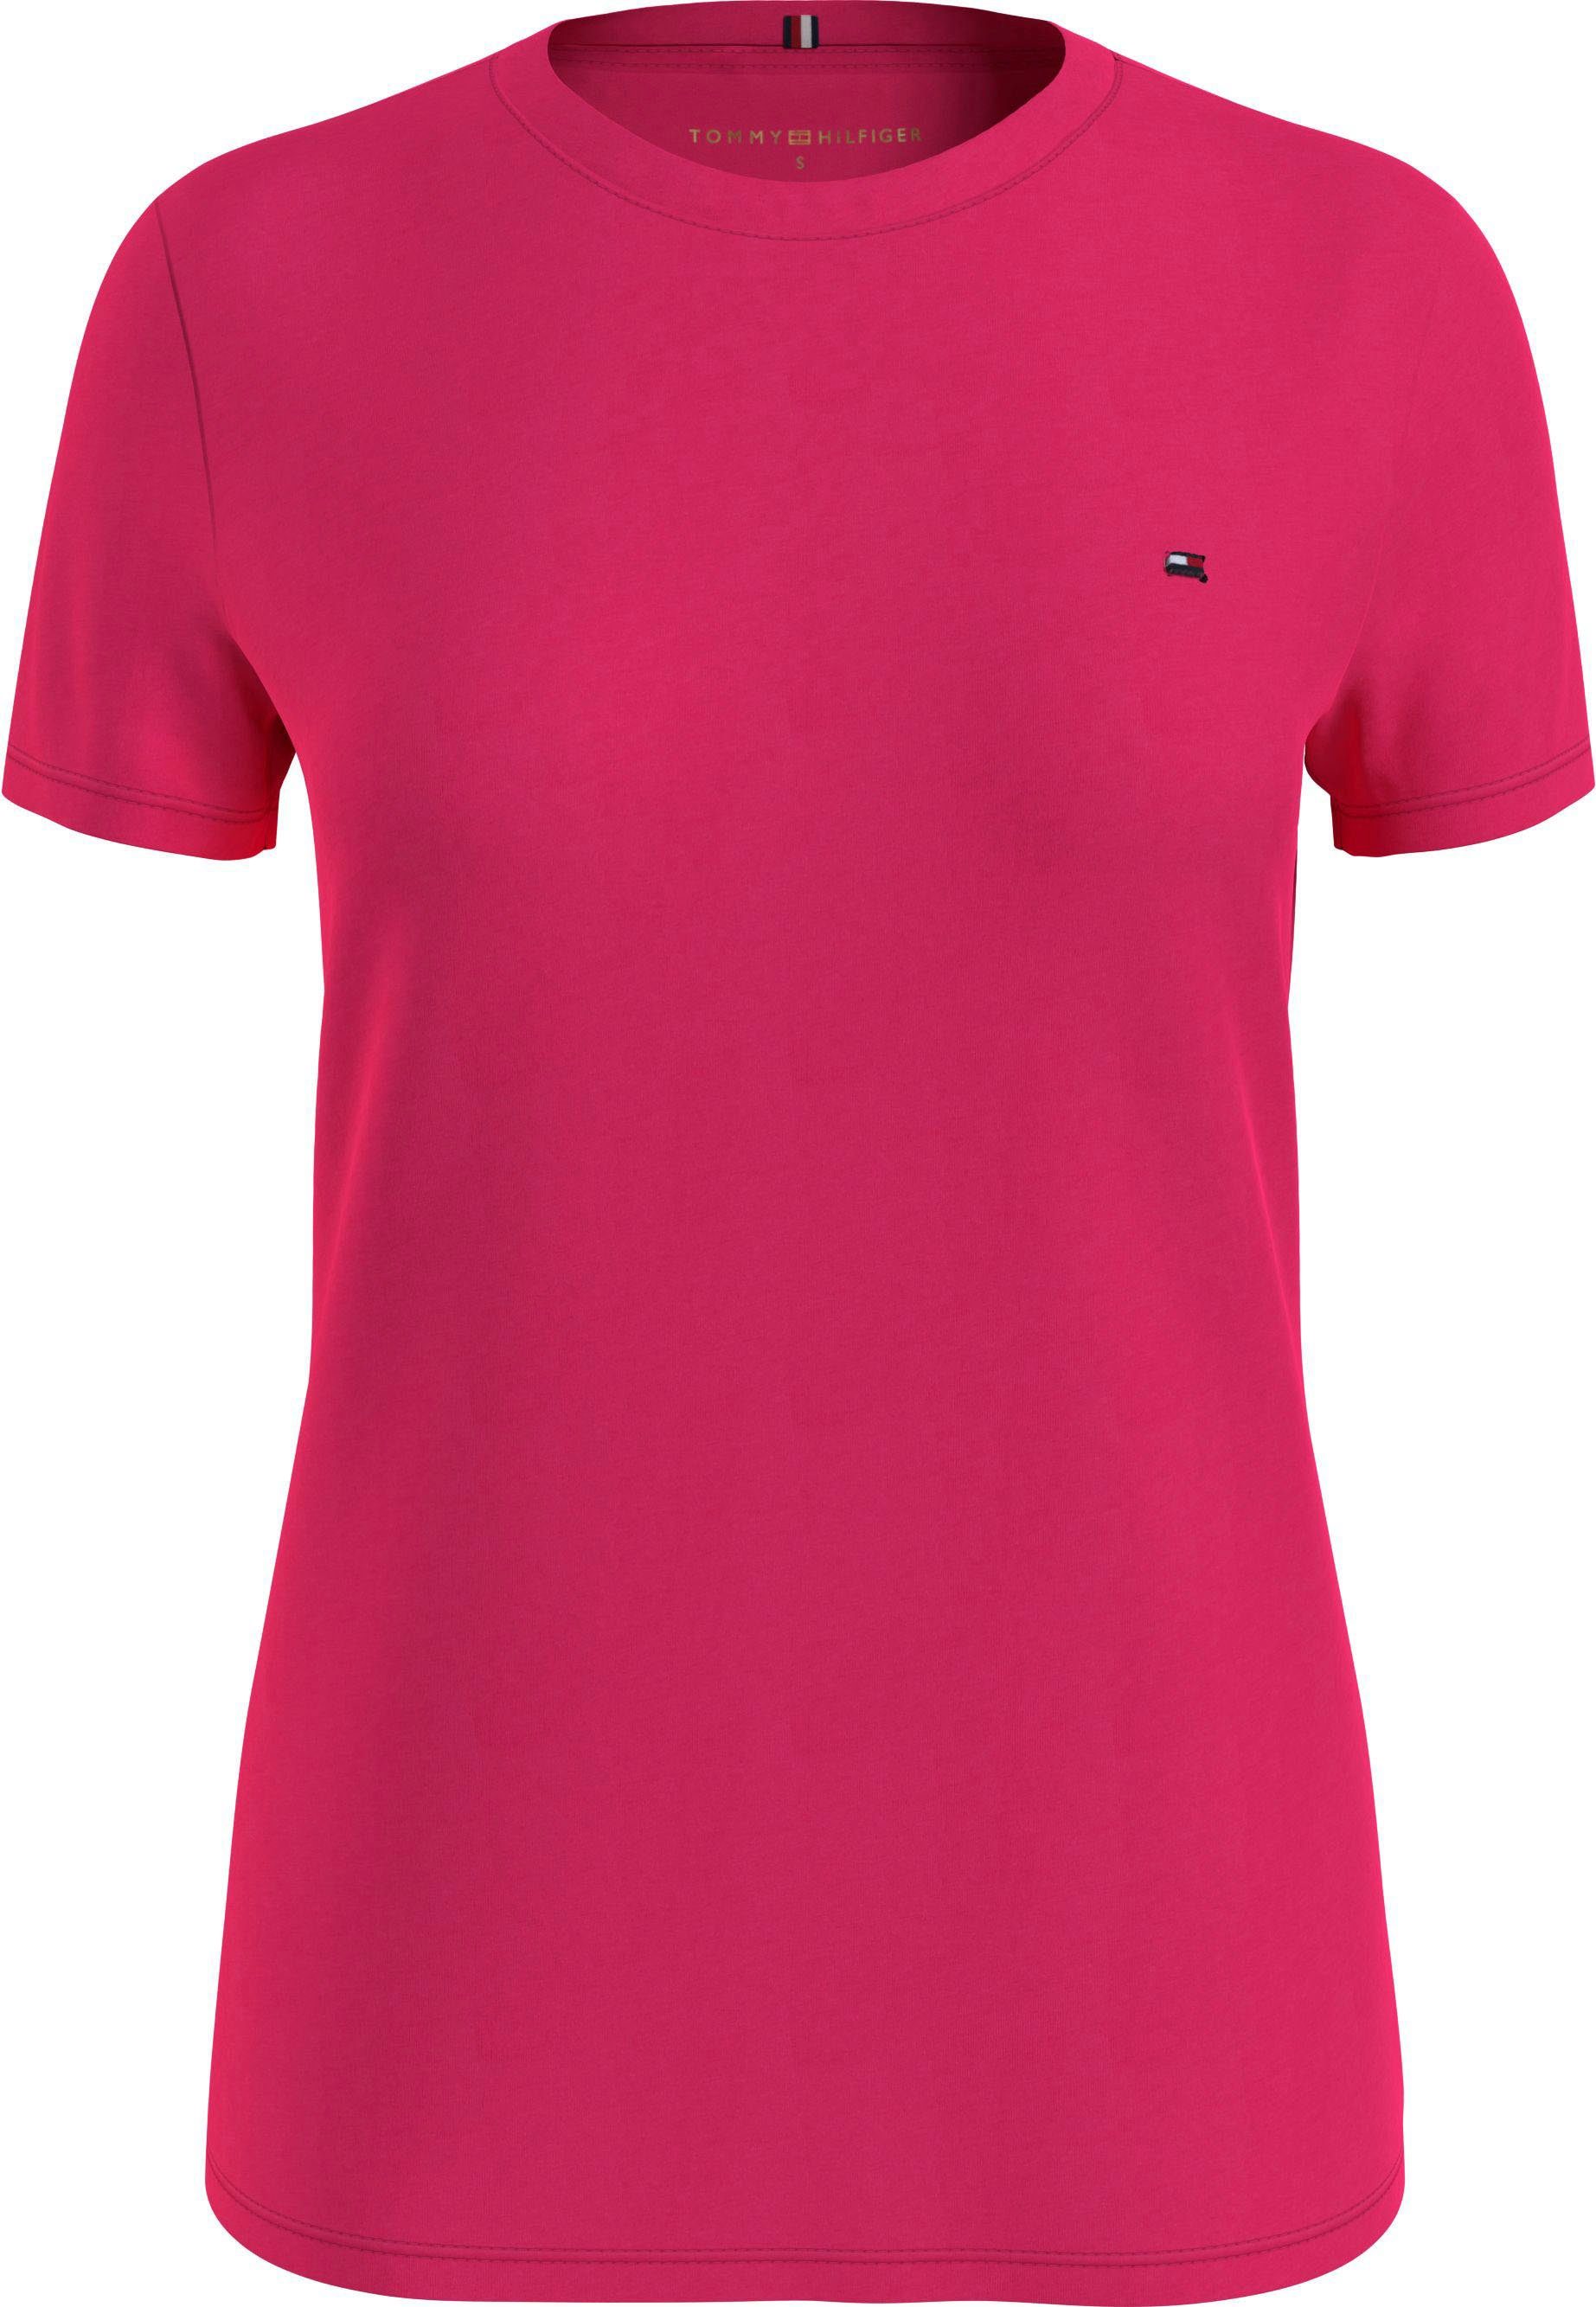 Tommy TEE NECK Markenlabel Hilfiger Pink-Splendor T-Shirt NEW mit CREW Tommy Hilfiger